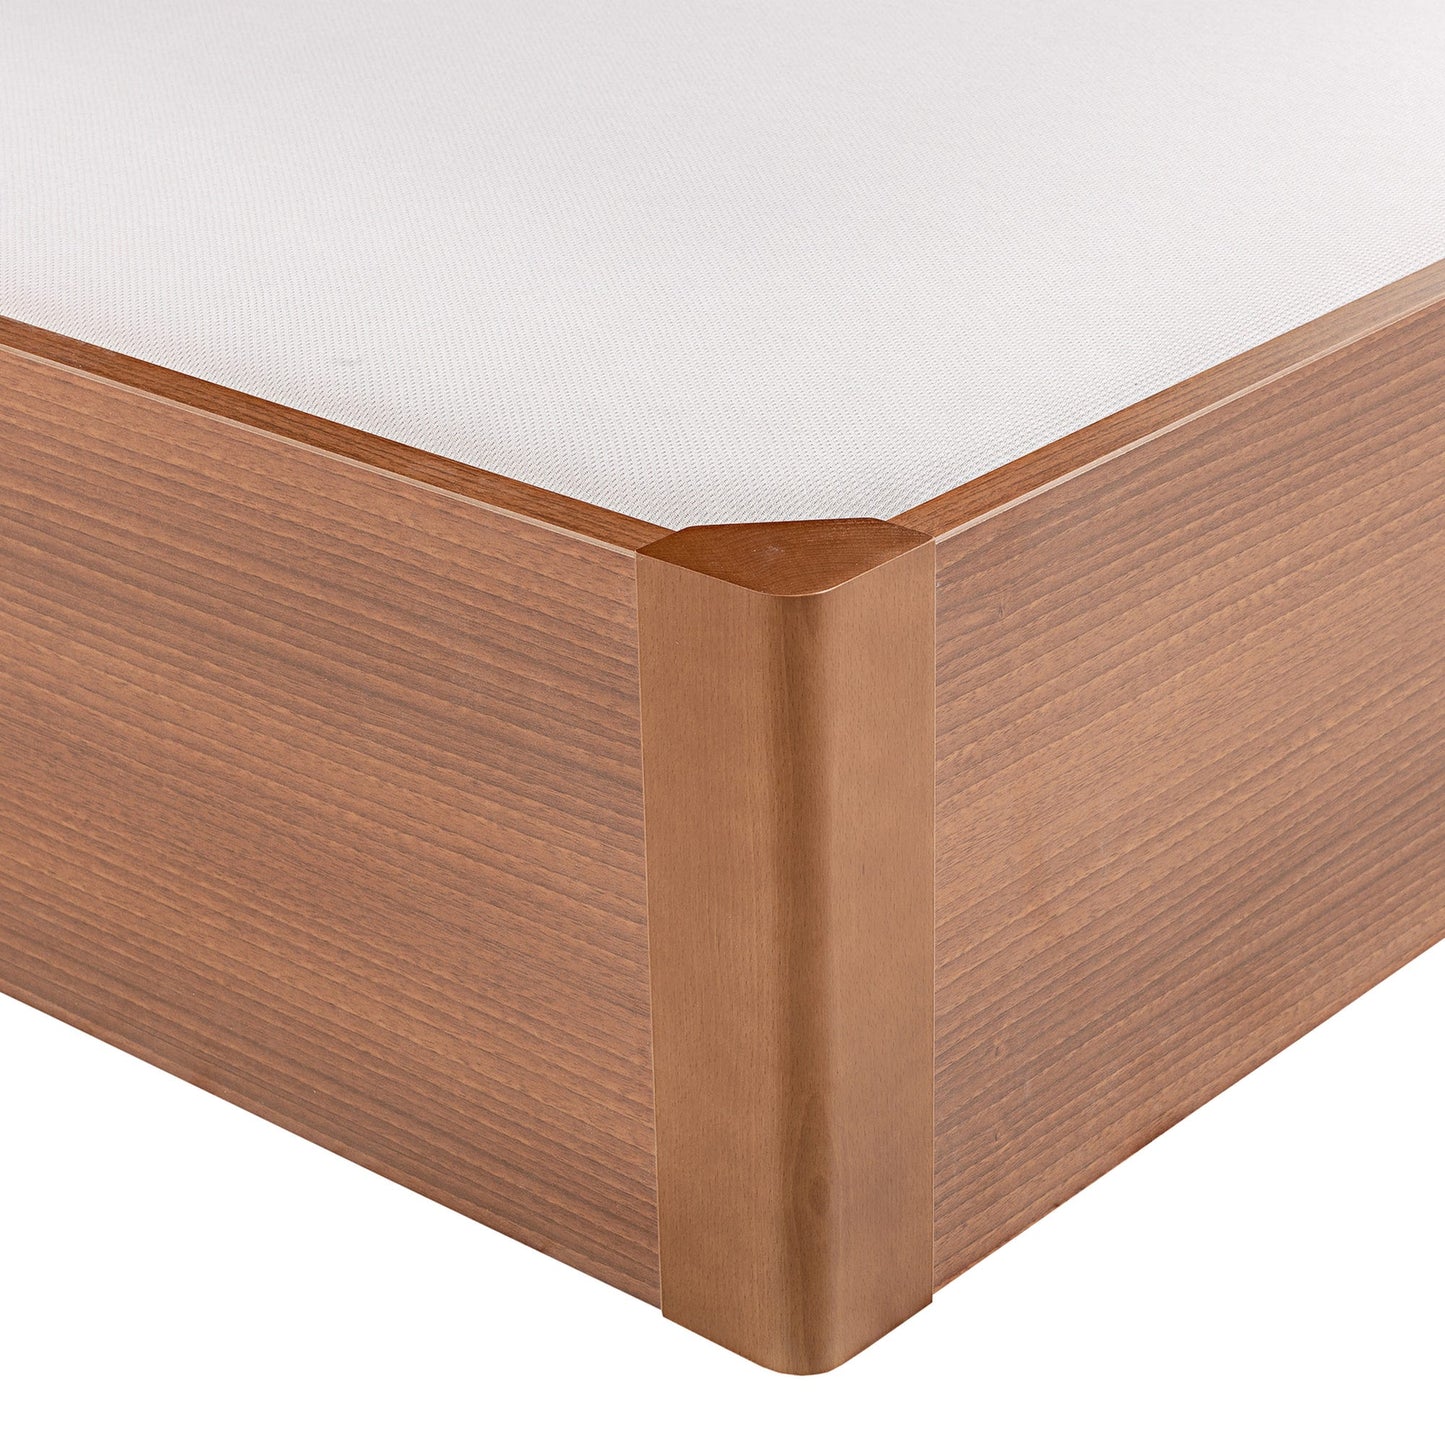 Canapé abatible de madera tapa única de color cerezo - DESIGN - 140x182